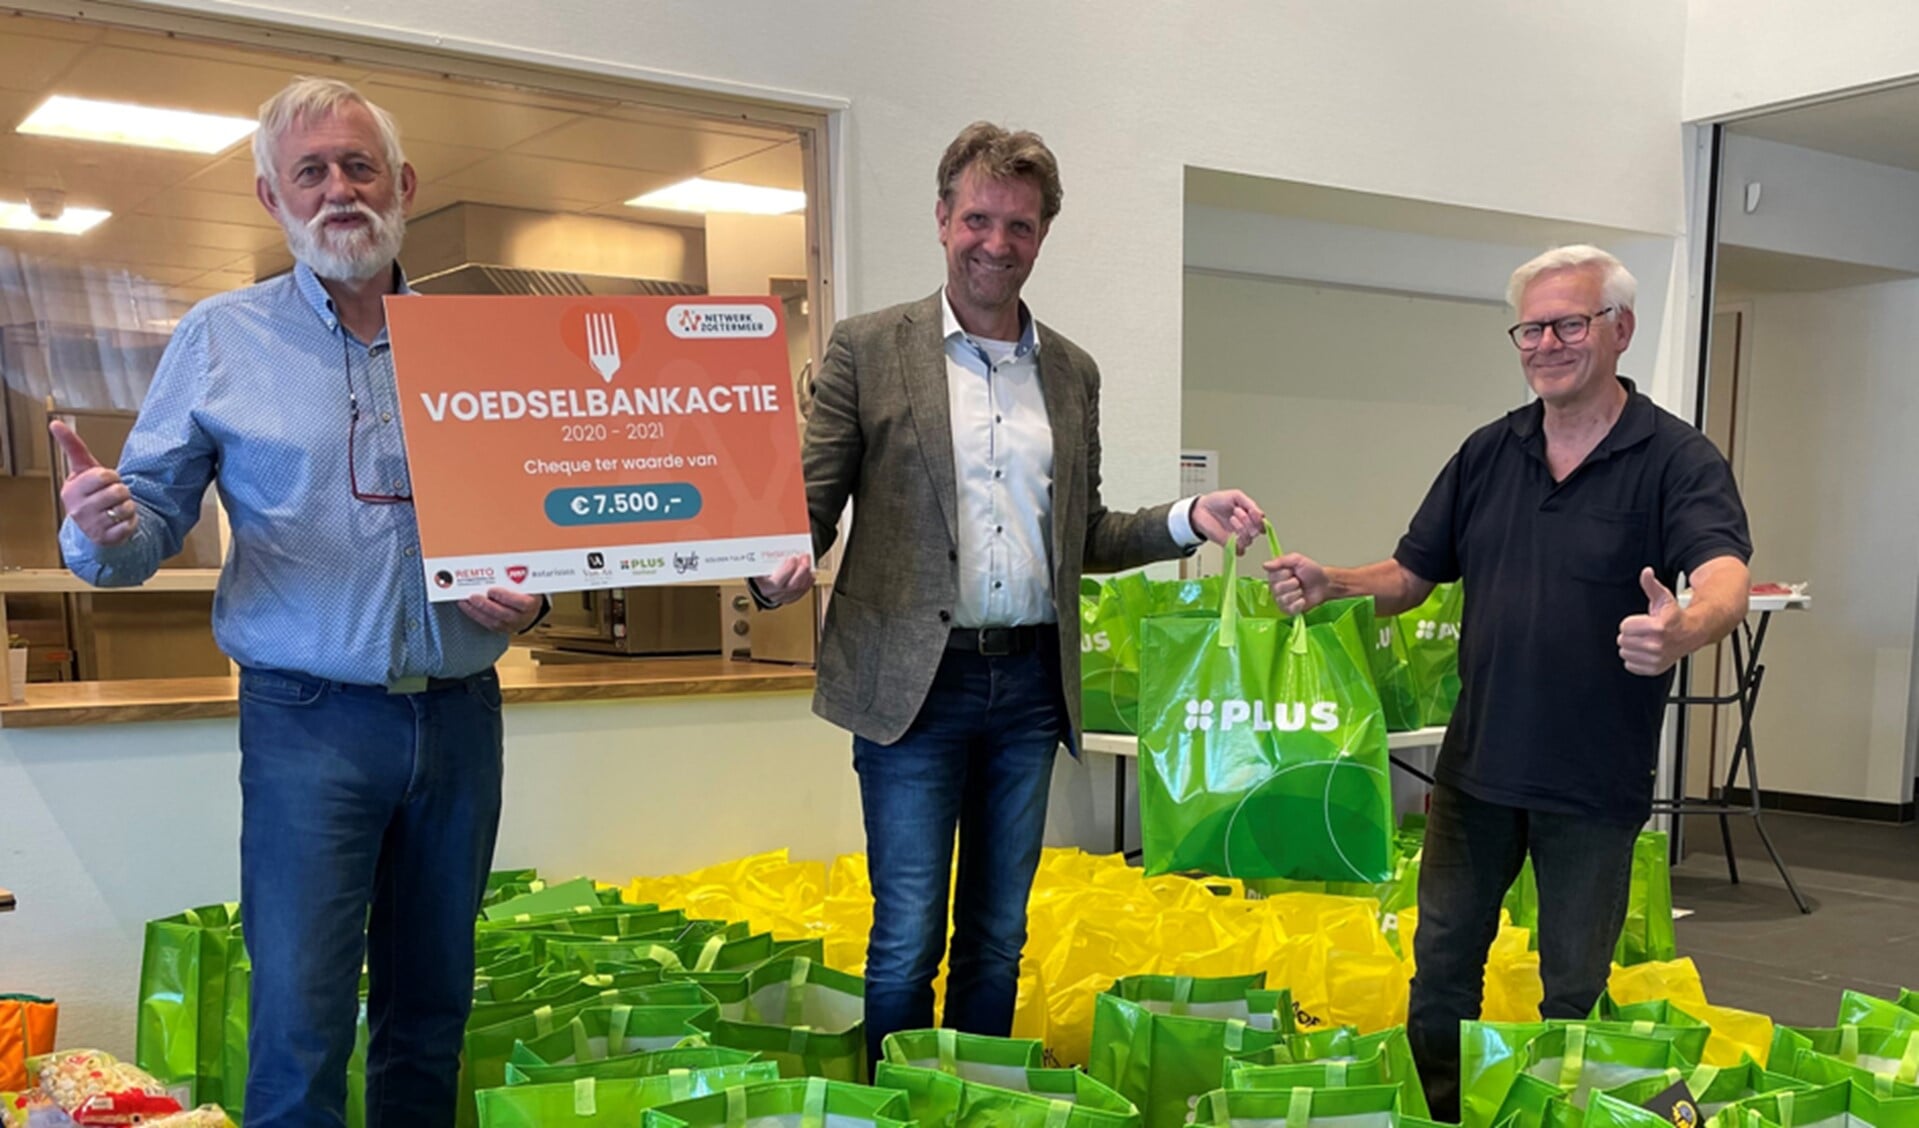 De Voedselbankactie is een jaarlijkse traditie. Deze uitreiking was in 2020. Foto: Archief Netwerk Zoetermeer